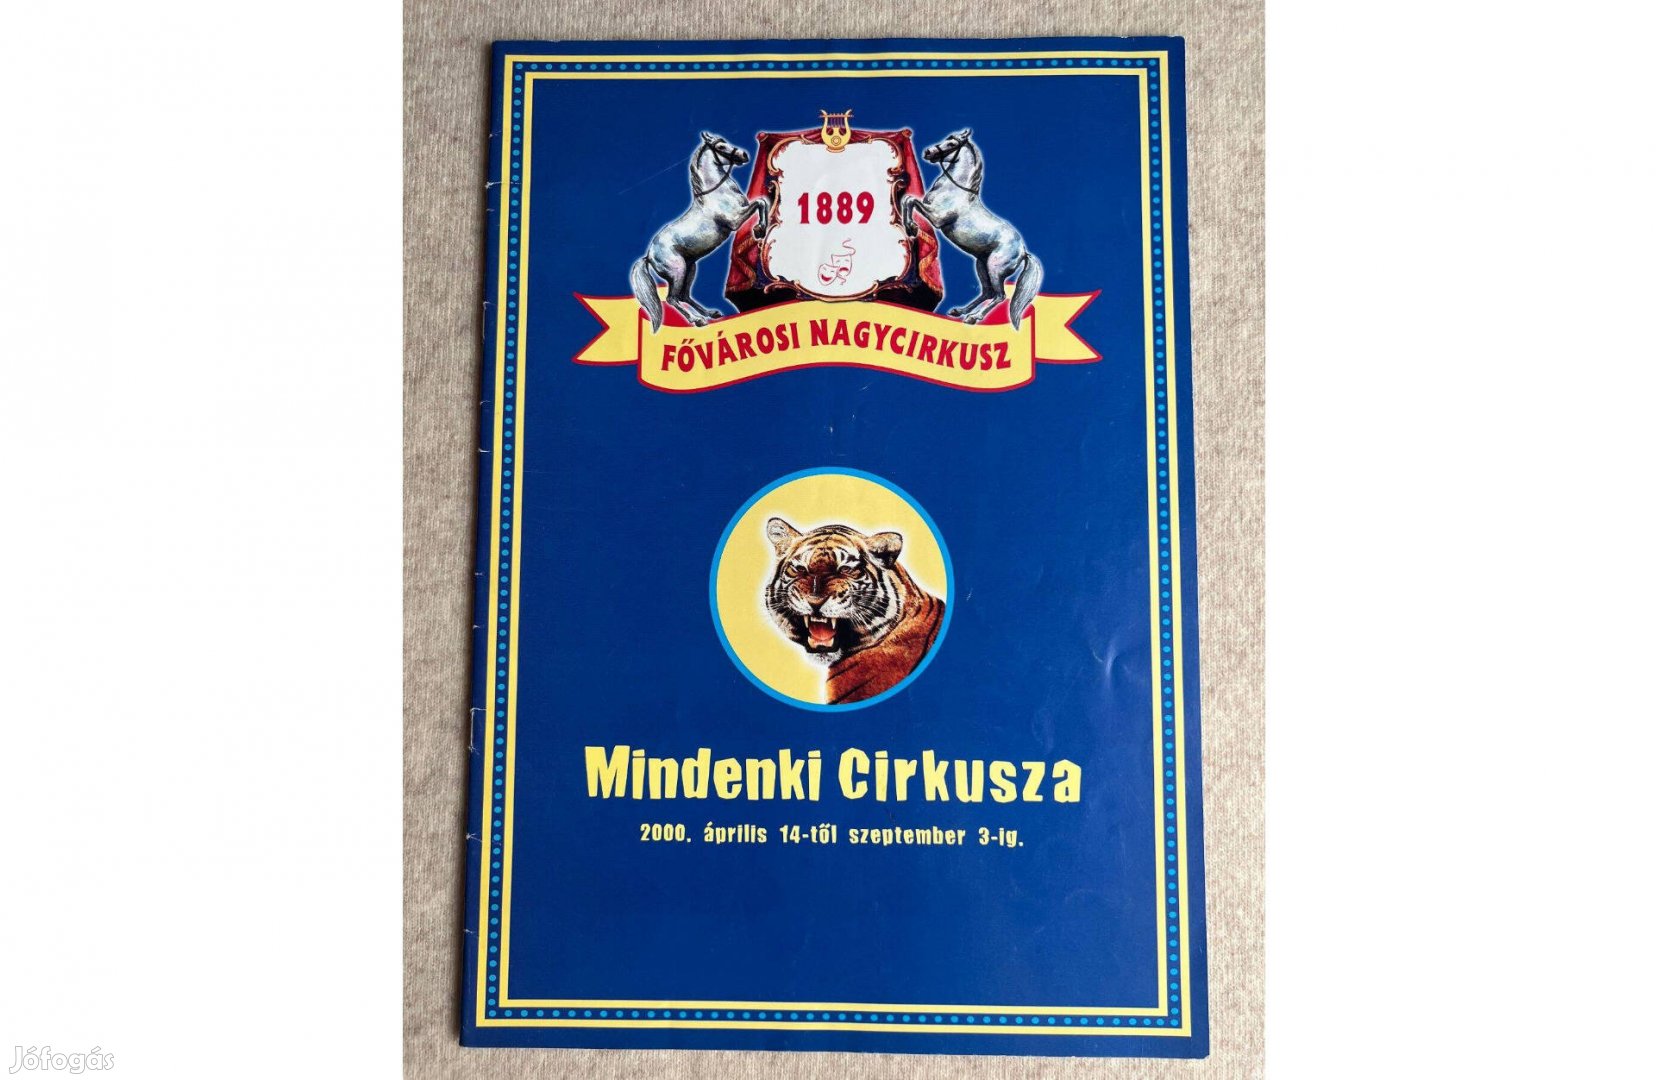 Cirkuszi műsorfüzet - Mindenki cirkusza 2000